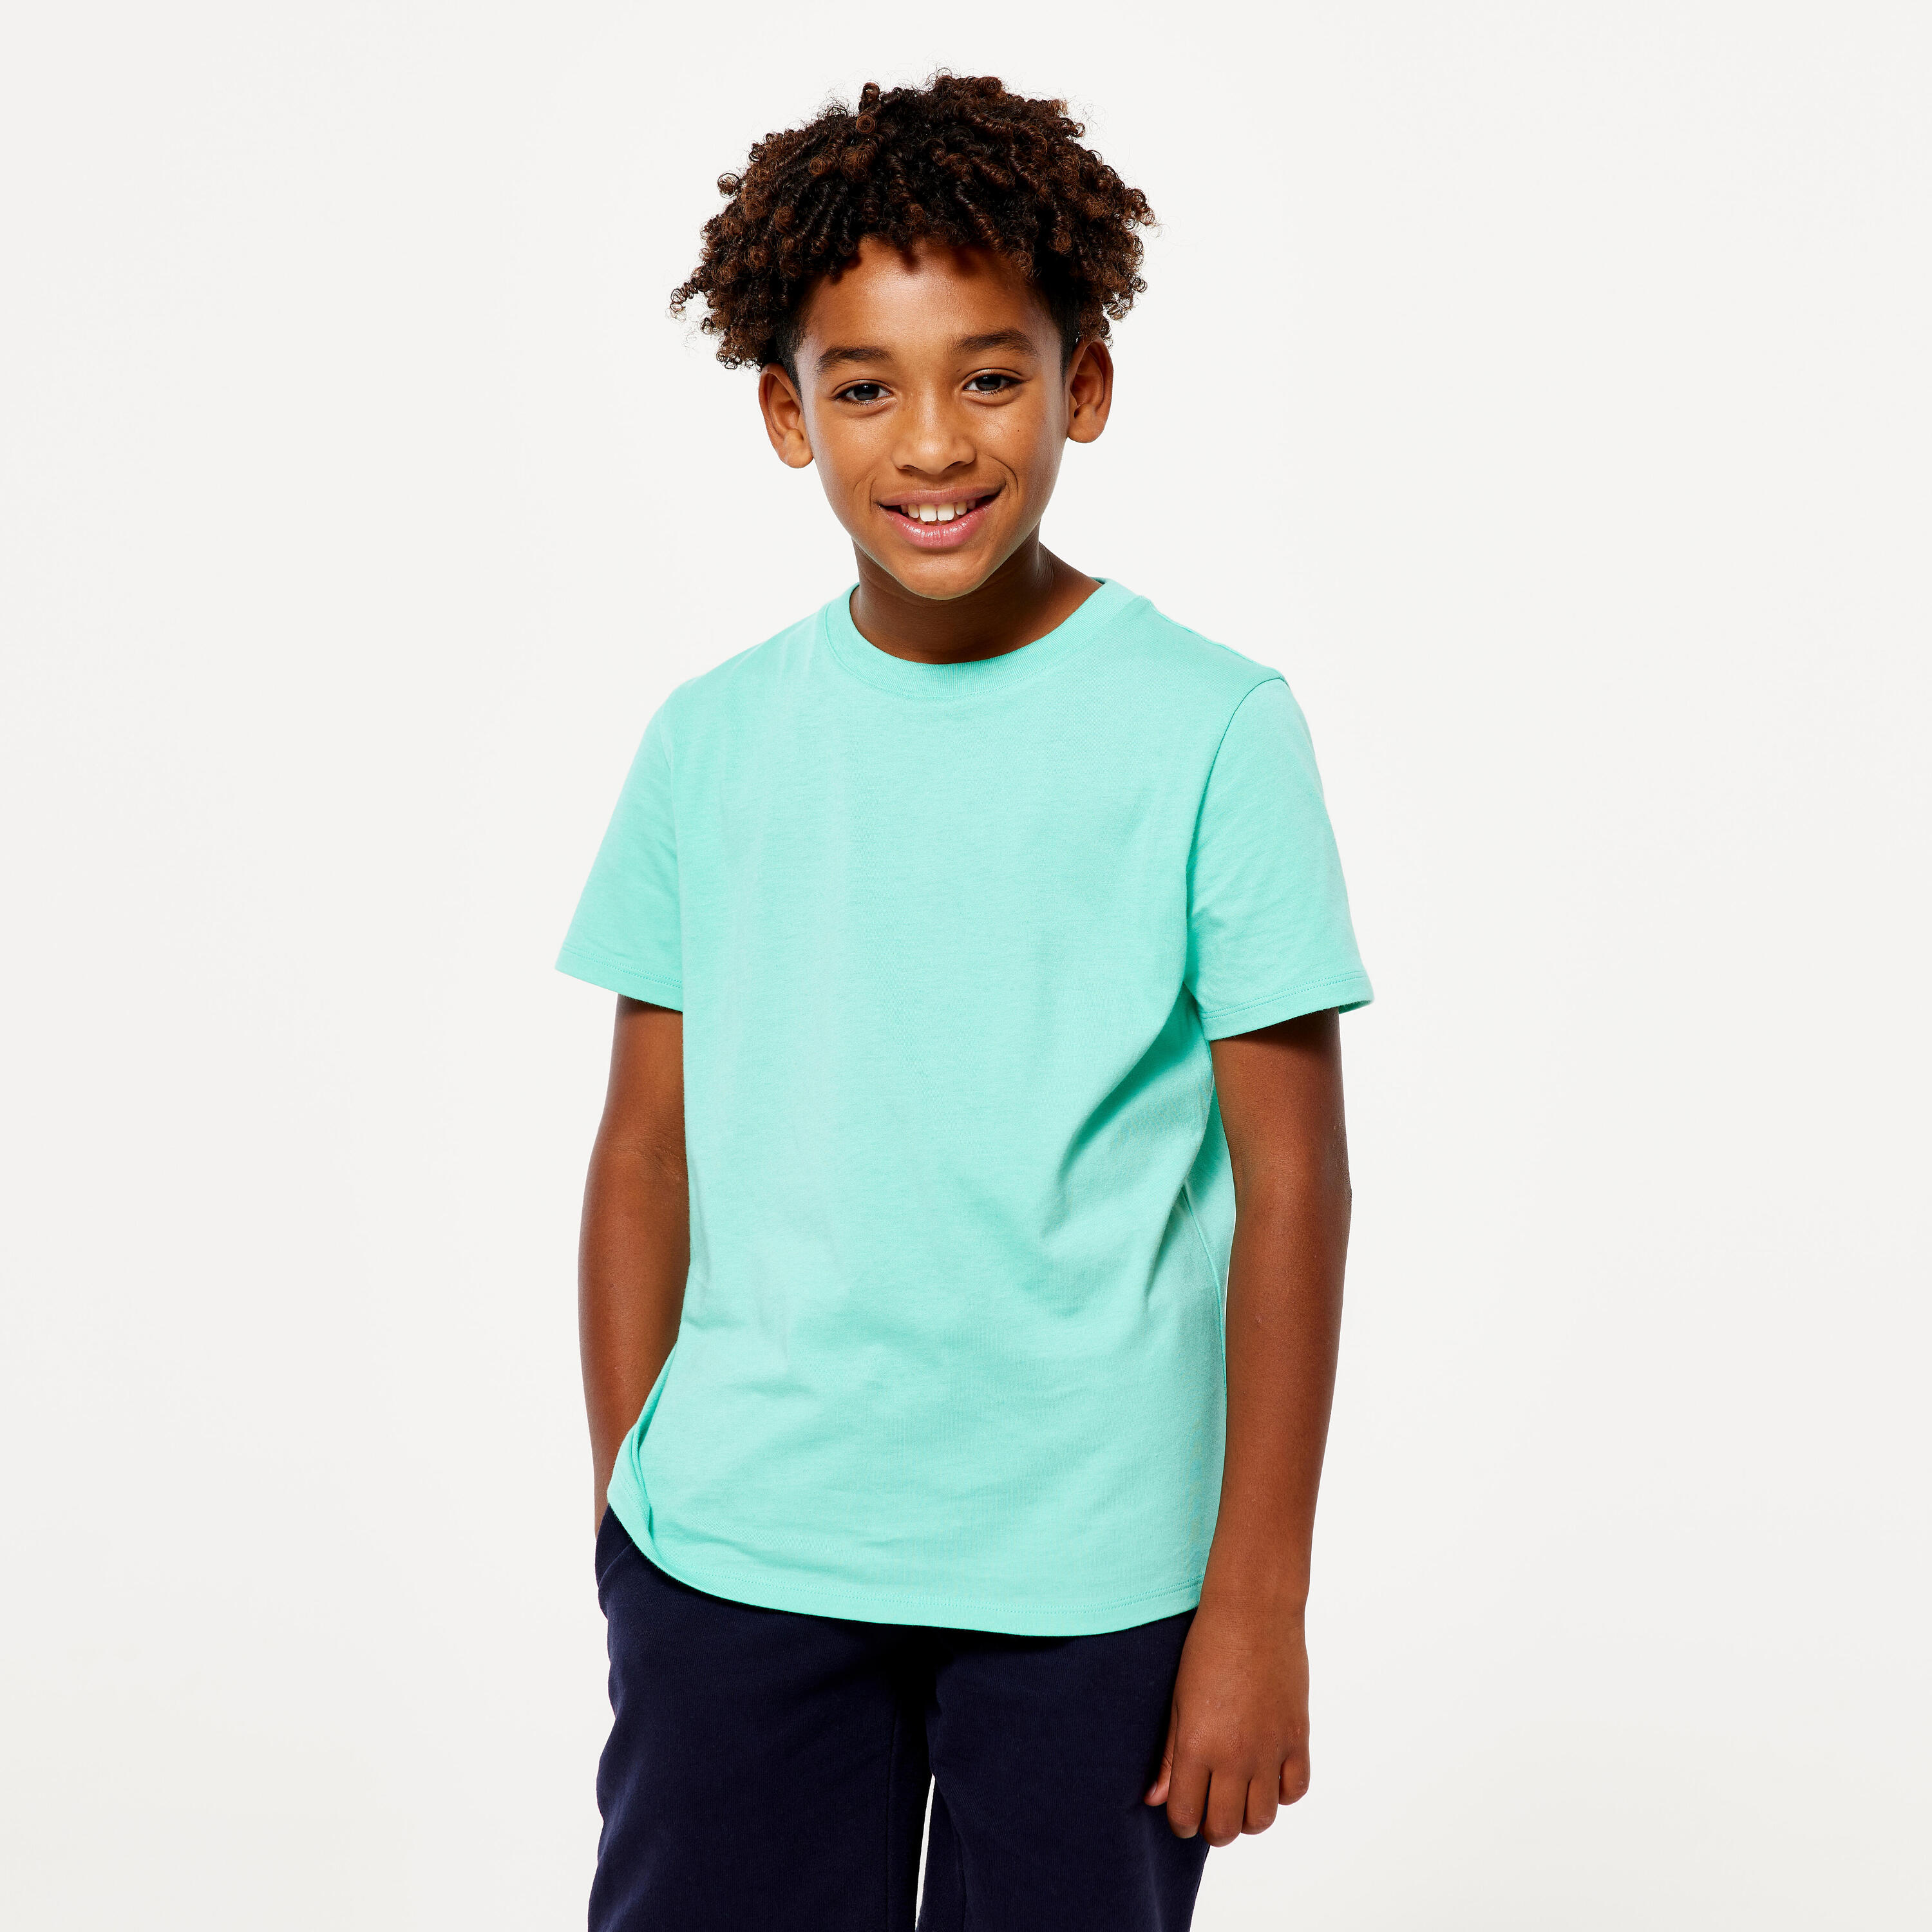 Kids' Unisex Cotton T-Shirt - Mint Green 5/7